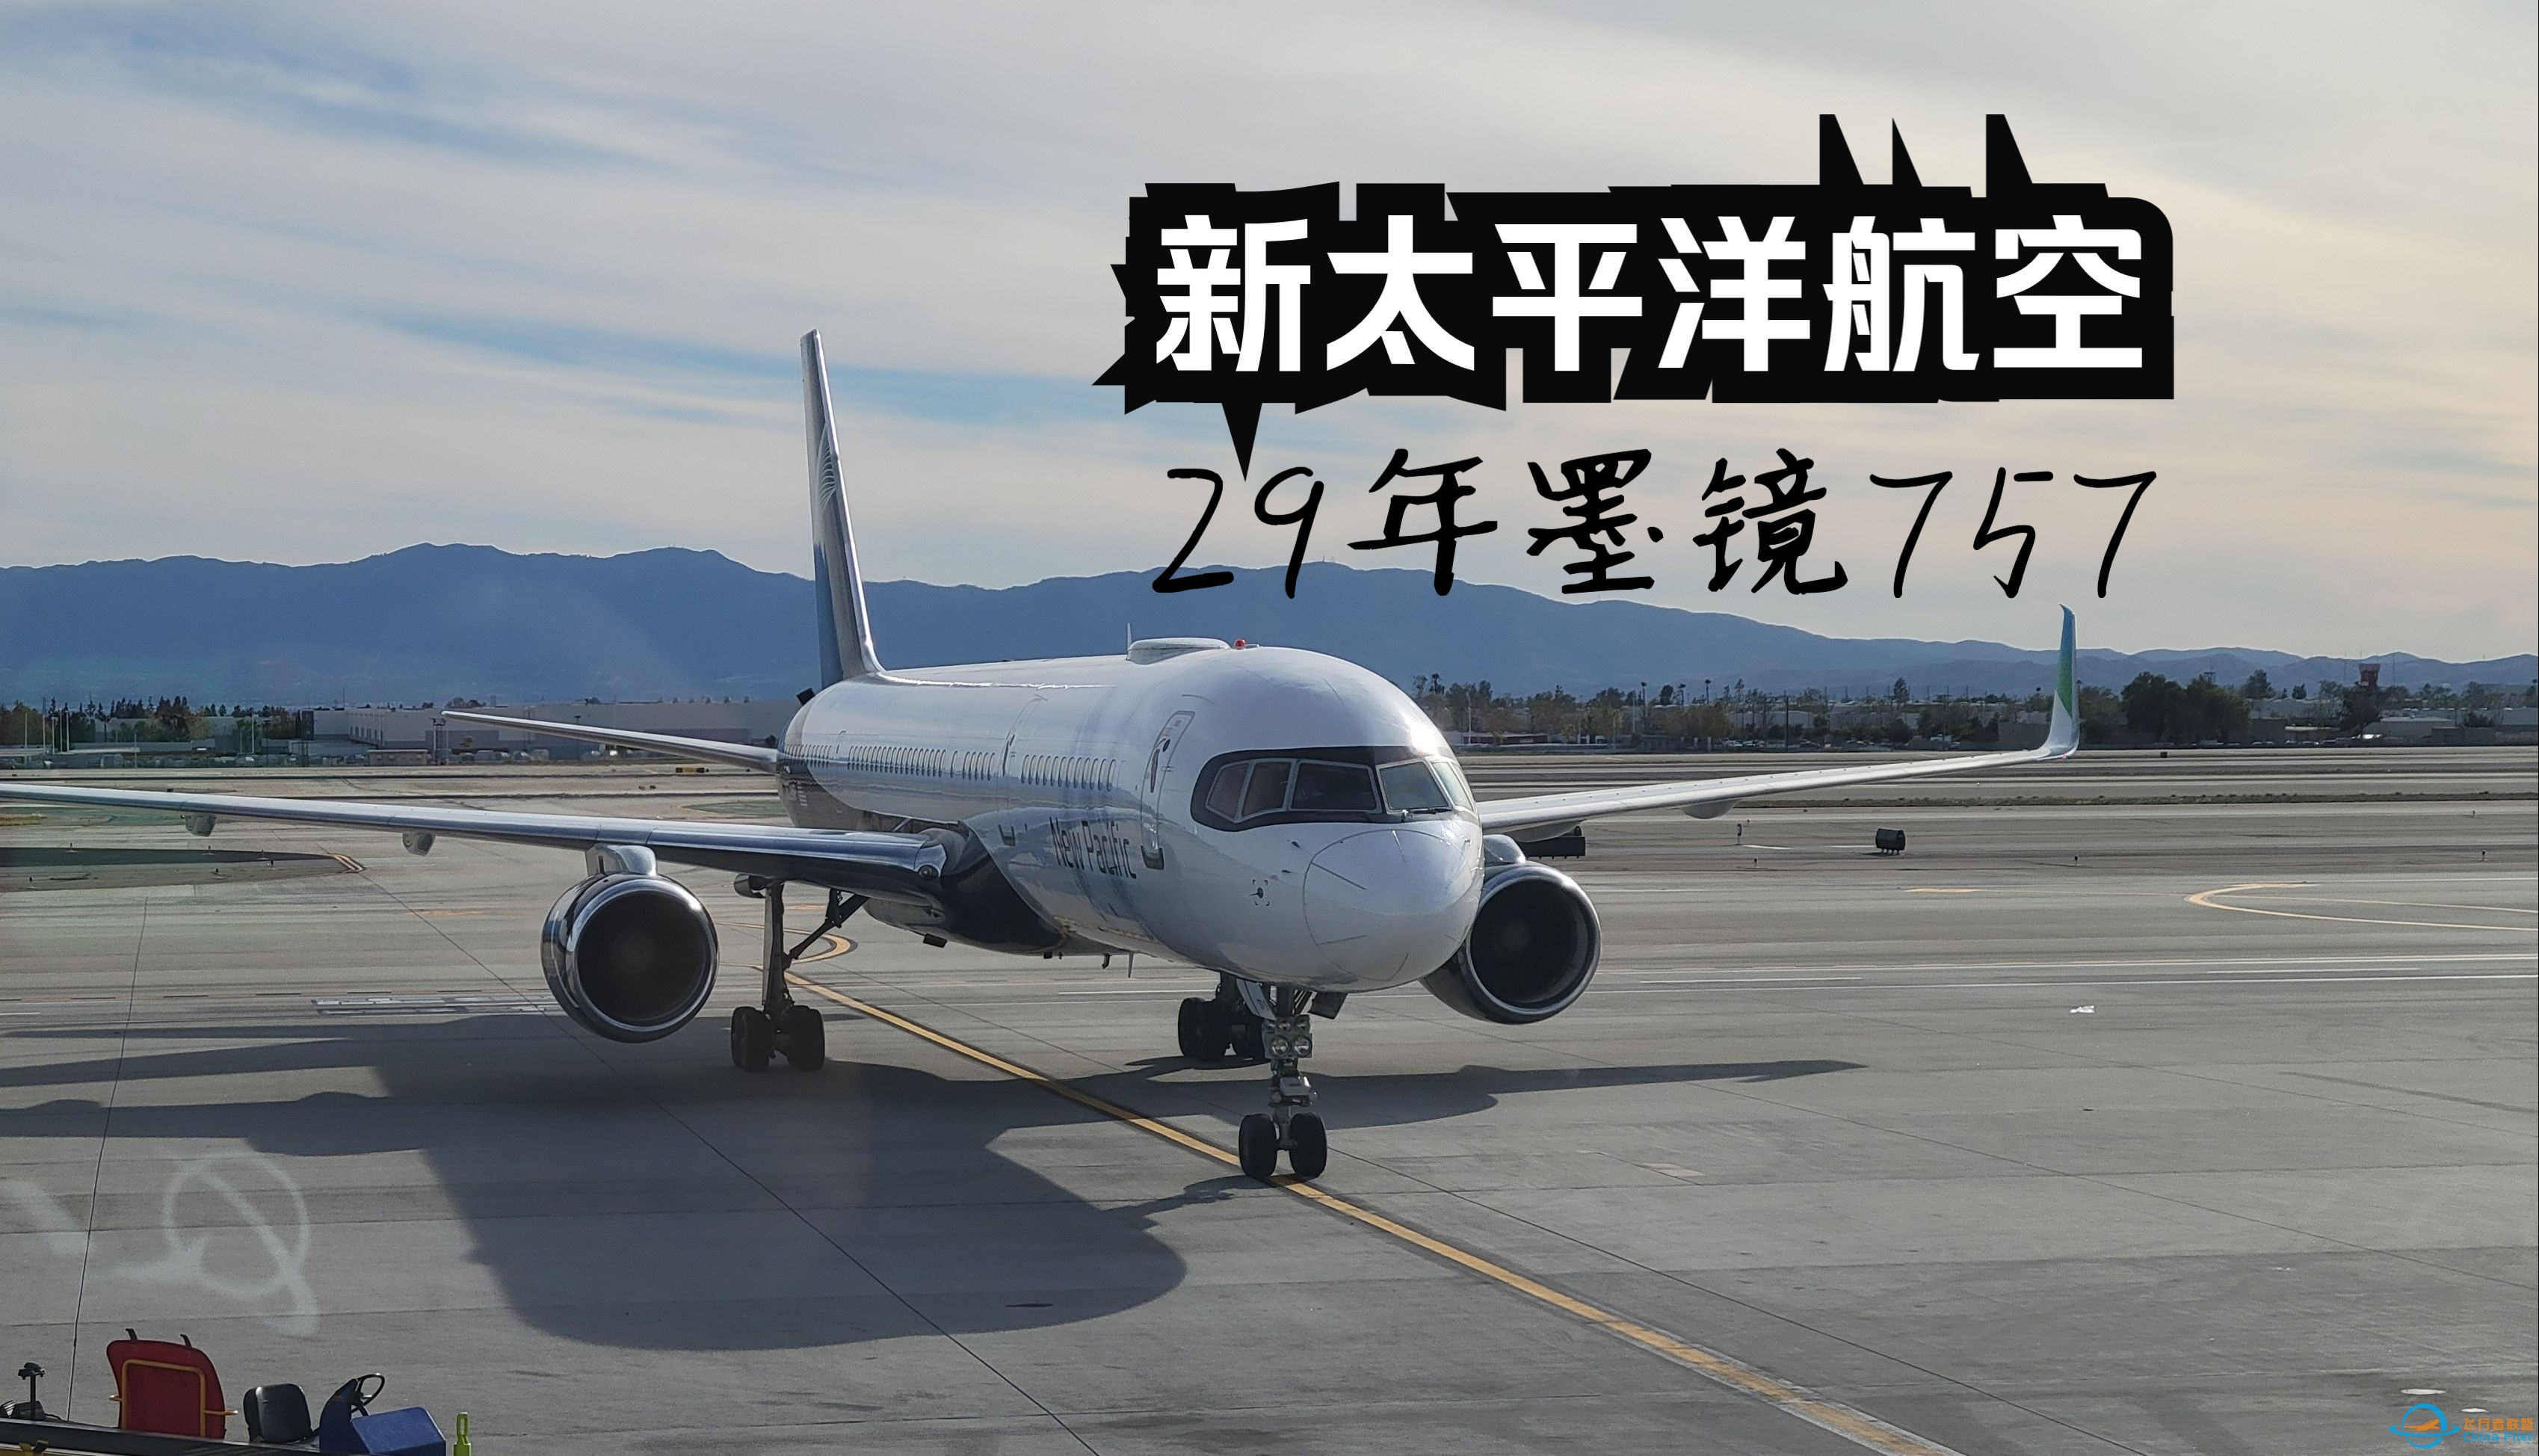 【飞行游记】当全新跨太平洋公司遇上墨镜757？全站首发新太平洋航空波音757超级经济舱体验-9409 